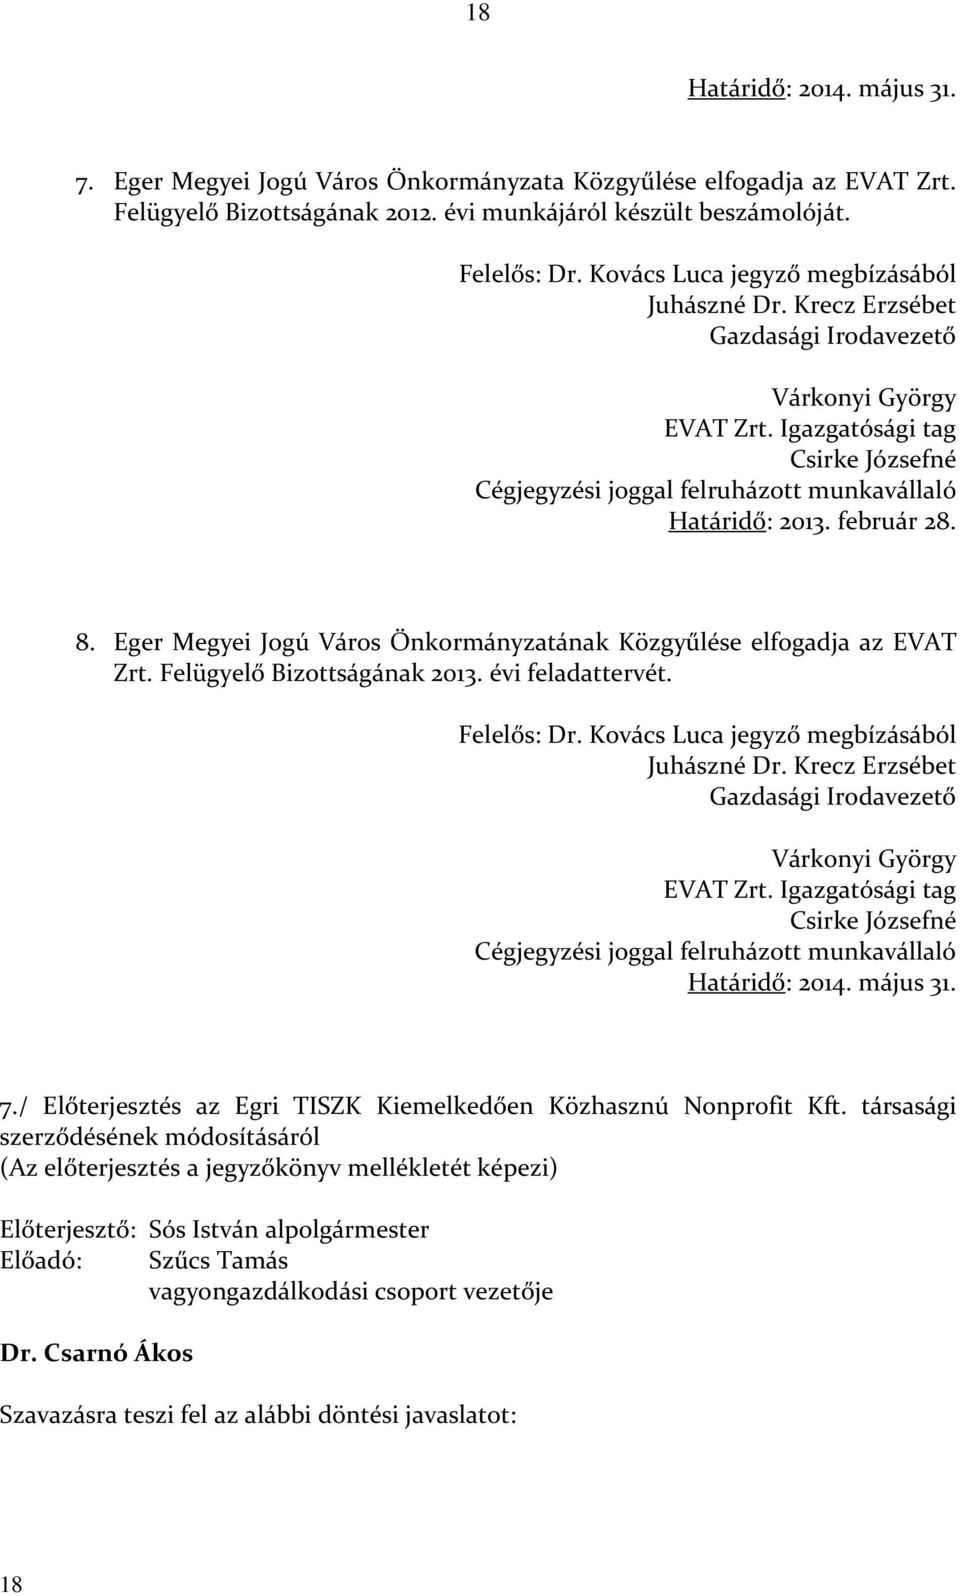 február 28. 8. Eger Megyei Jogú Város Önkormányzatának Közgyűlése elfogadja az EVAT Zrt. Felügyelő Bizottságának 2013. évi feladattervét. Felelős: Dr. Kovács Luca jegyző megbízásából Juhászné Dr.